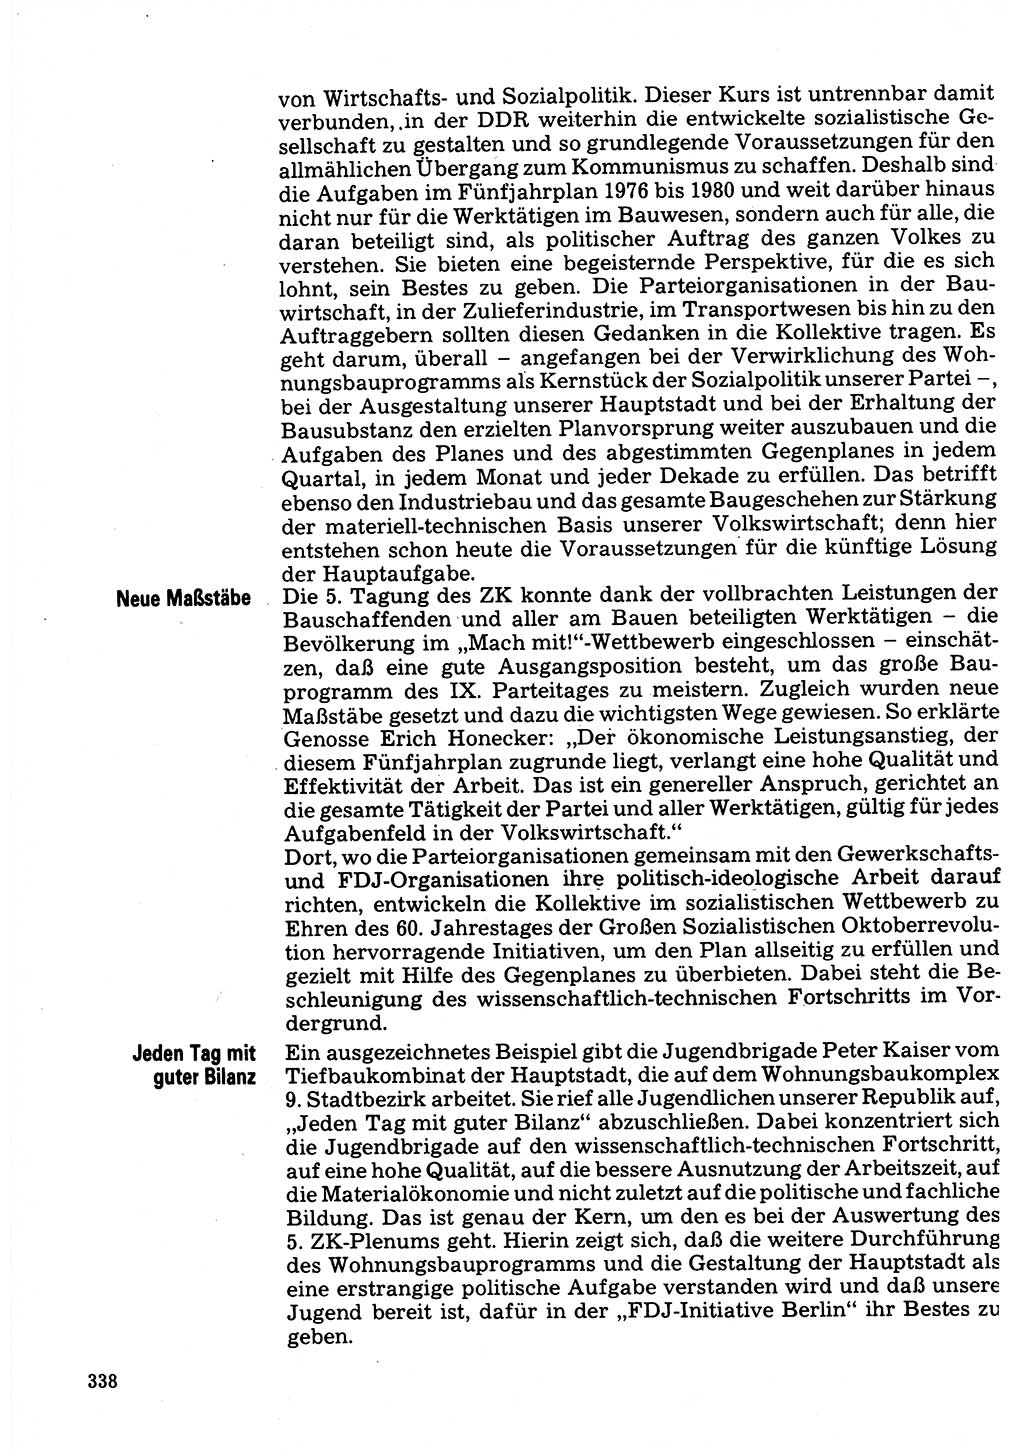 Neuer Weg (NW), Organ des Zentralkomitees (ZK) der SED (Sozialistische Einheitspartei Deutschlands) für Fragen des Parteilebens, 32. Jahrgang [Deutsche Demokratische Republik (DDR)] 1977, Seite 338 (NW ZK SED DDR 1977, S. 338)